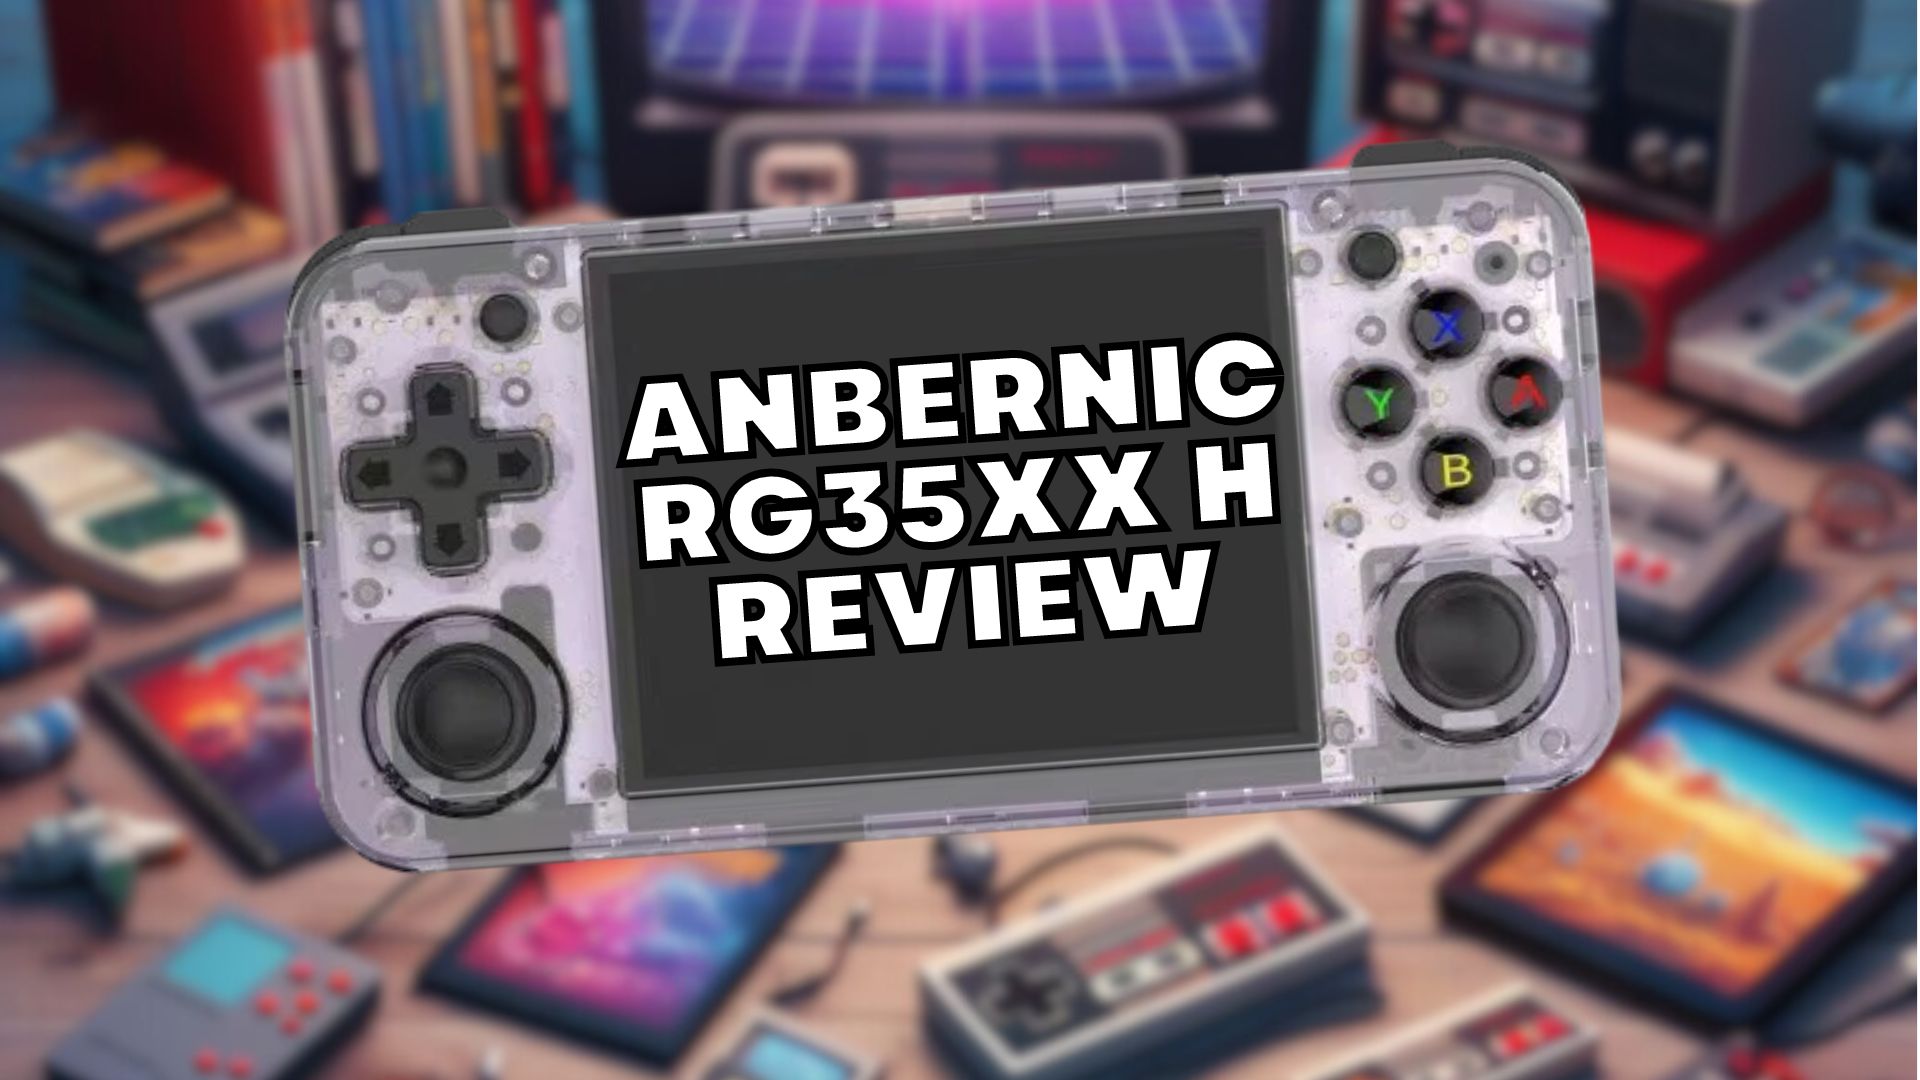 Anbernic RG35XX H Gjennomgang med video - Flott budsjett retro spillhåndholdt